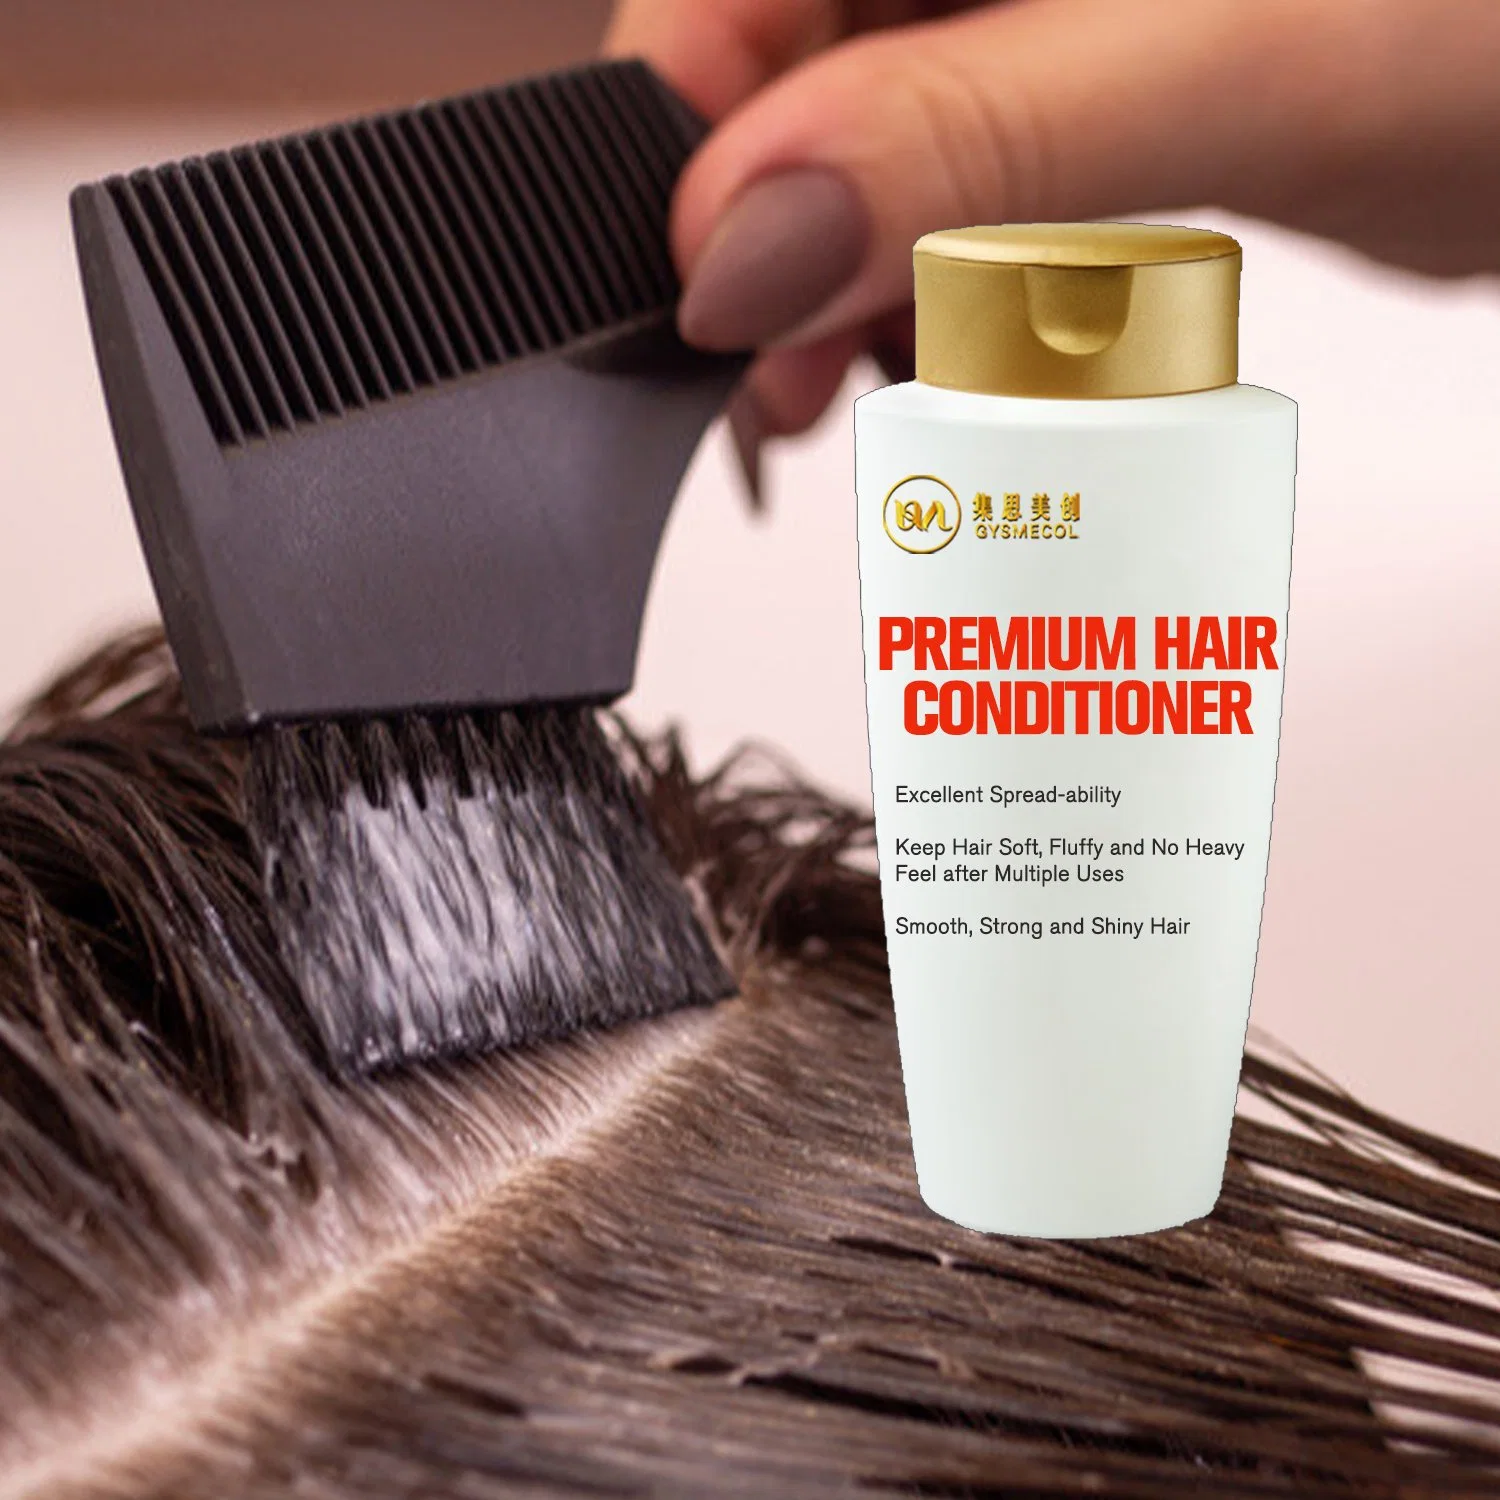 ملصق خاص منتجات العناية بالشعر لقناع معالجة الشعر